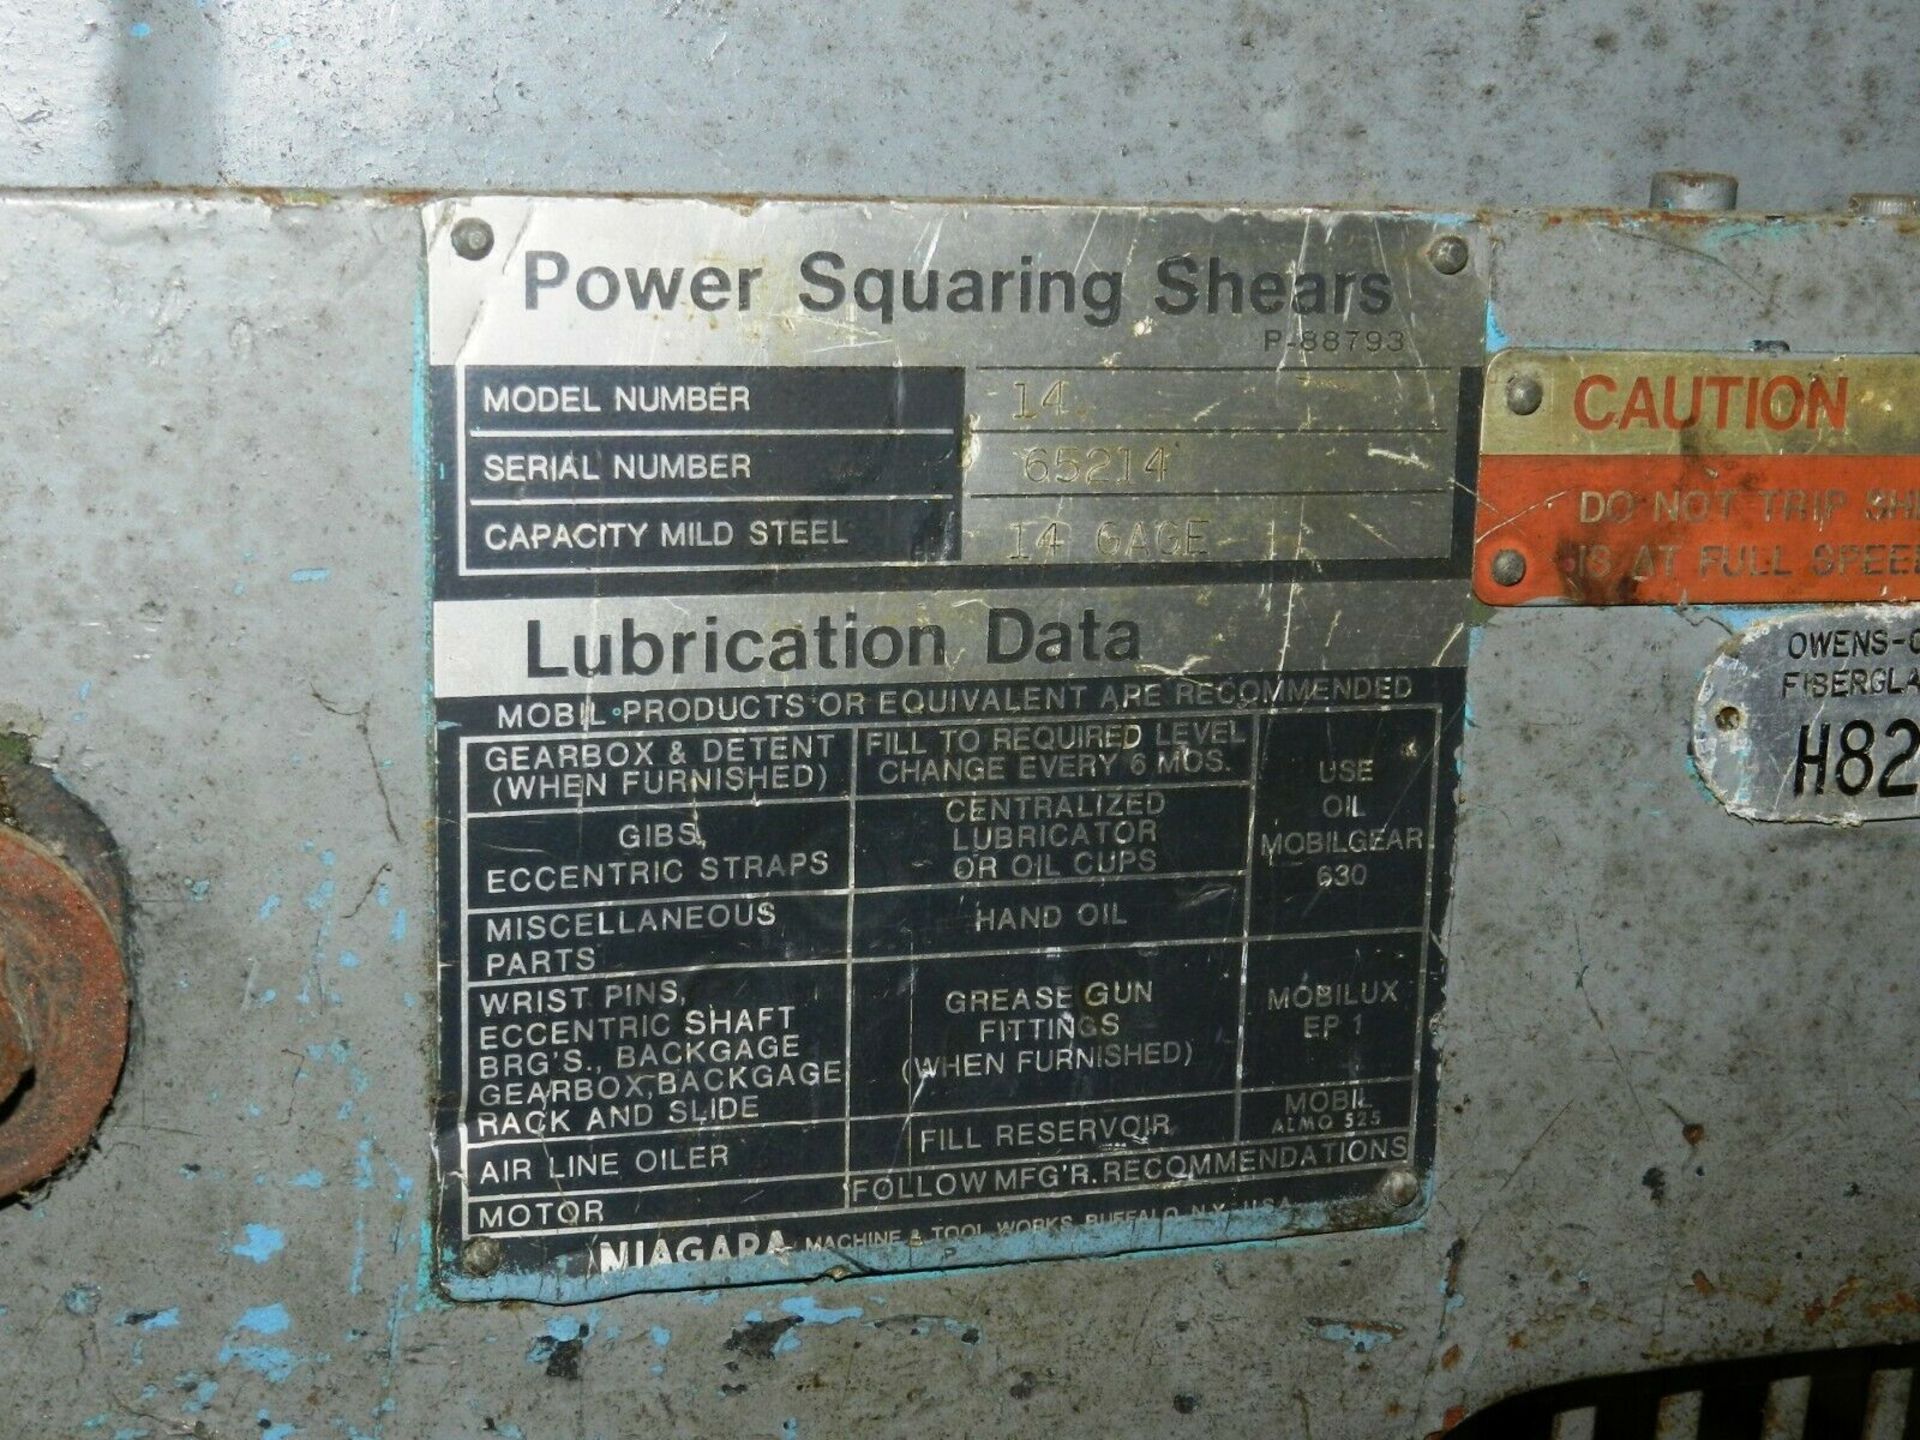 Niagara Power Squaring Shear 14 Gage Capacity - Image 4 of 5